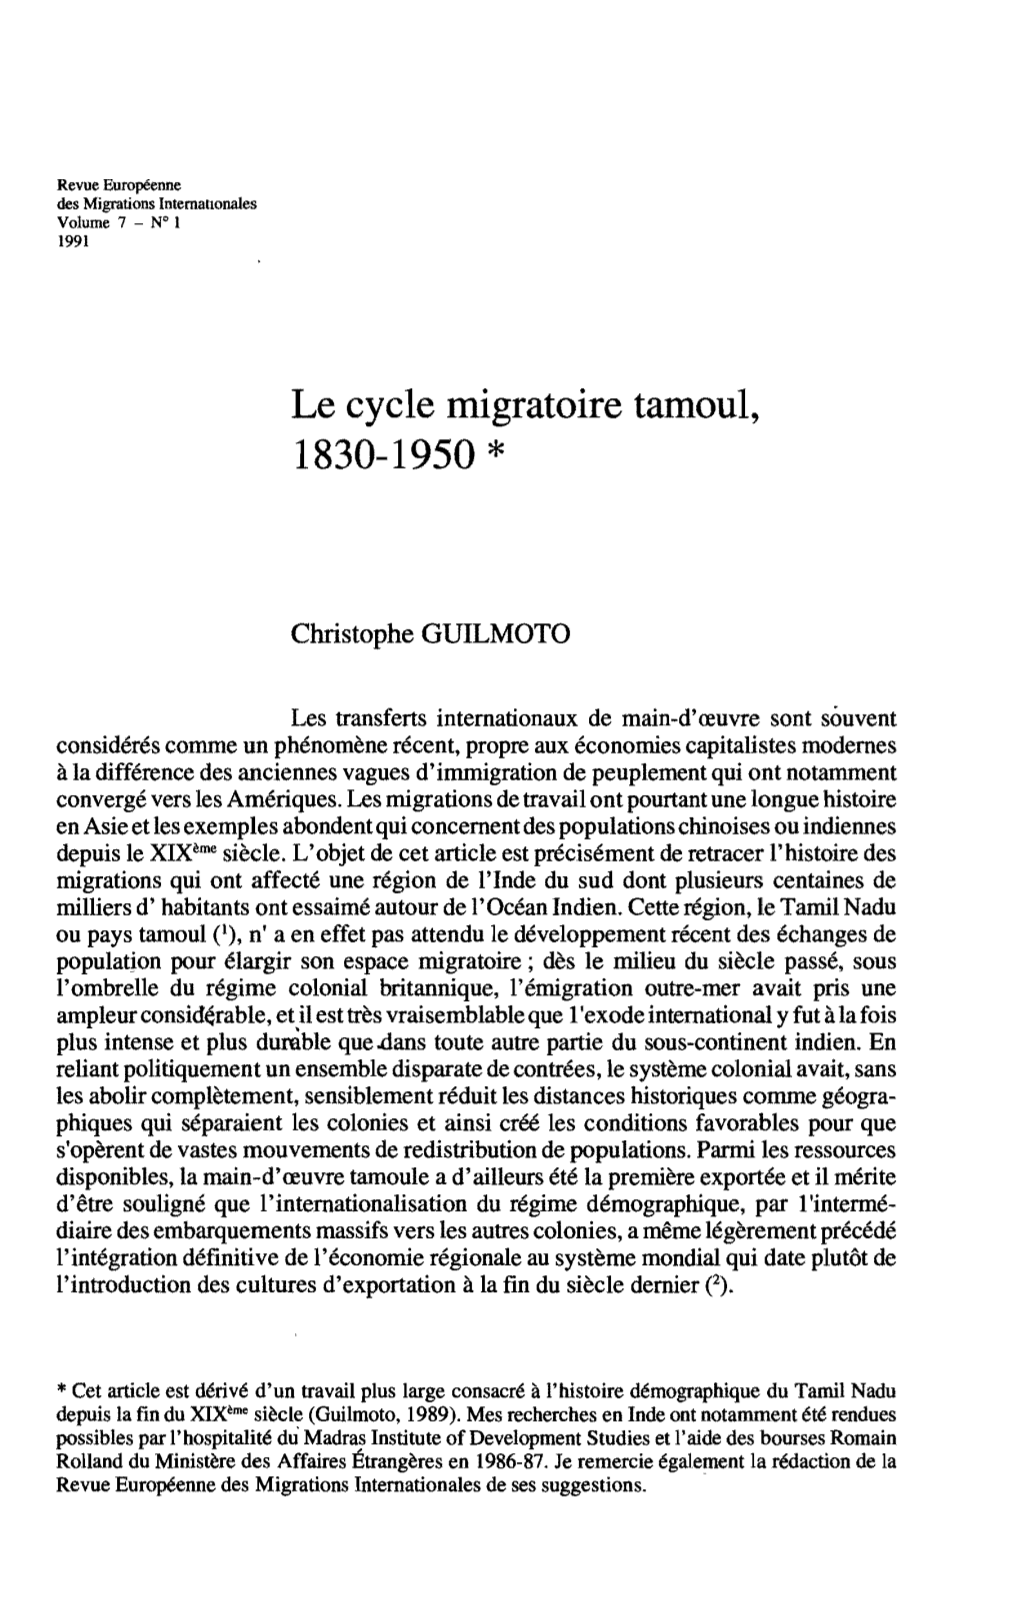 Le Cycle Migratoire Tamoul, 1830-1950 *